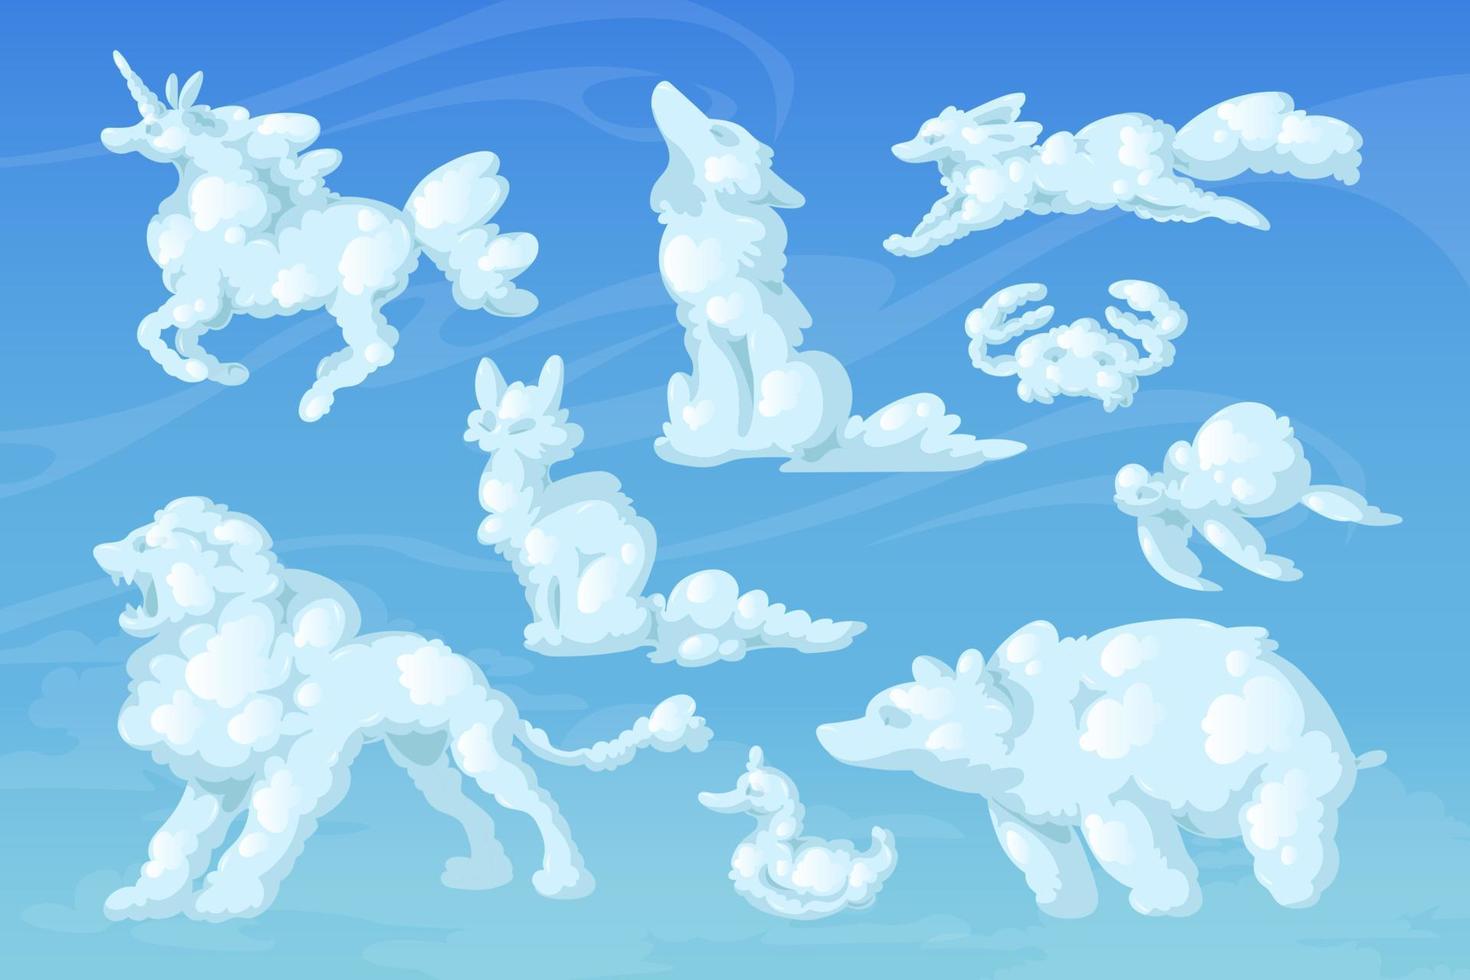 wolkentiere, karikaturflauschige wirbel im blauen himmel vektor